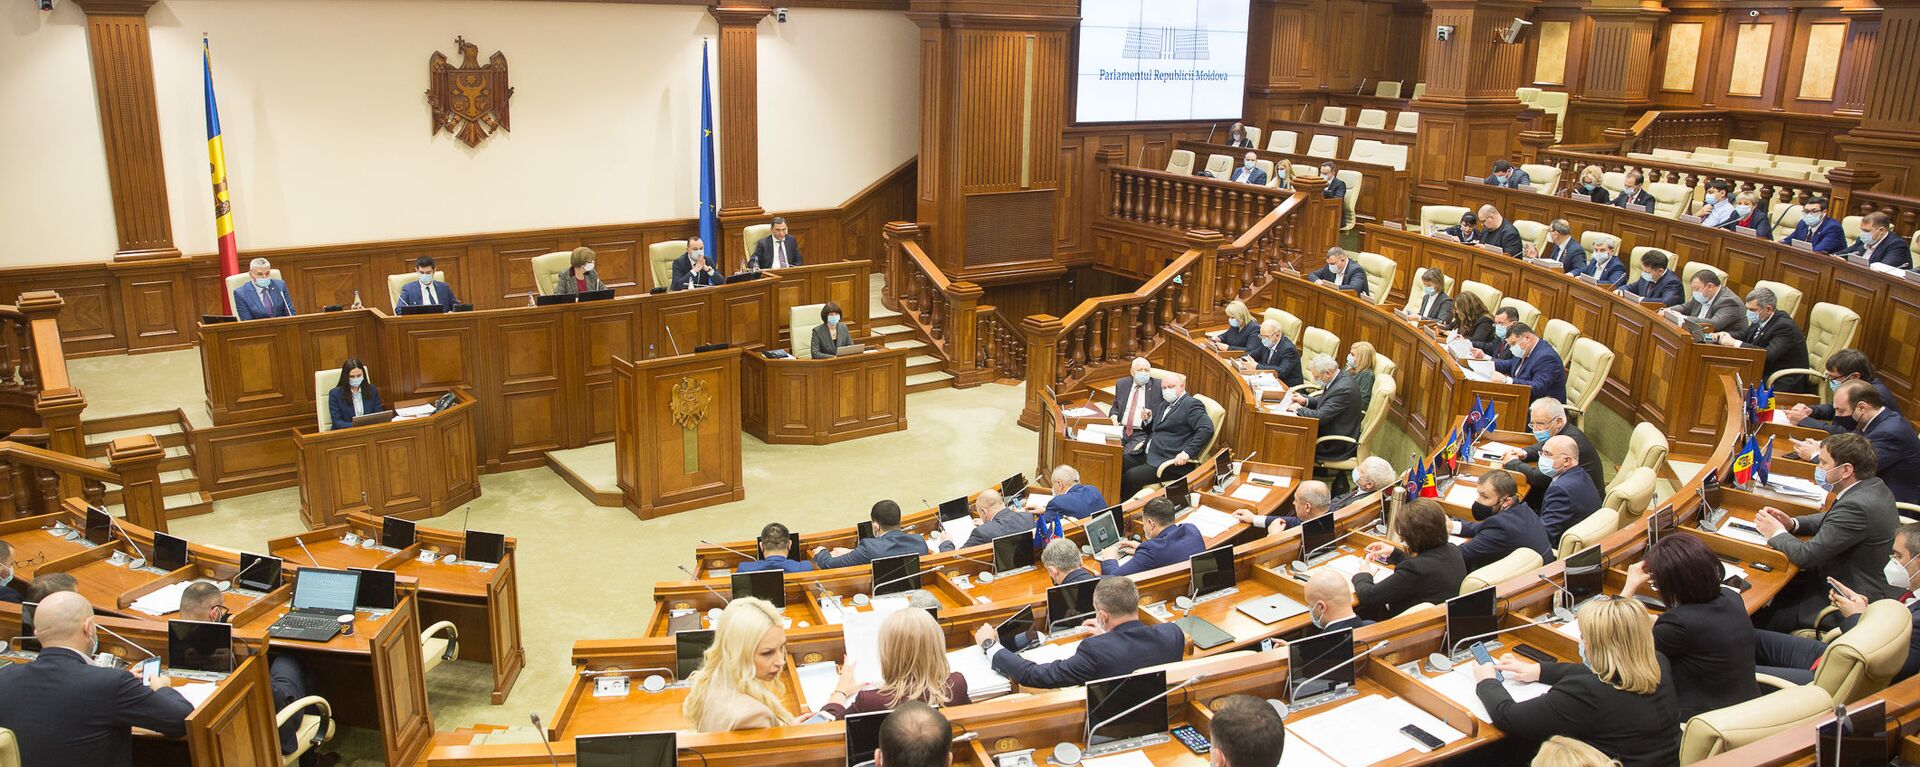 Ședința plenară a Parlamentului, 16 decembrie 2020 - Sputnik Moldova, 1920, 26.04.2021